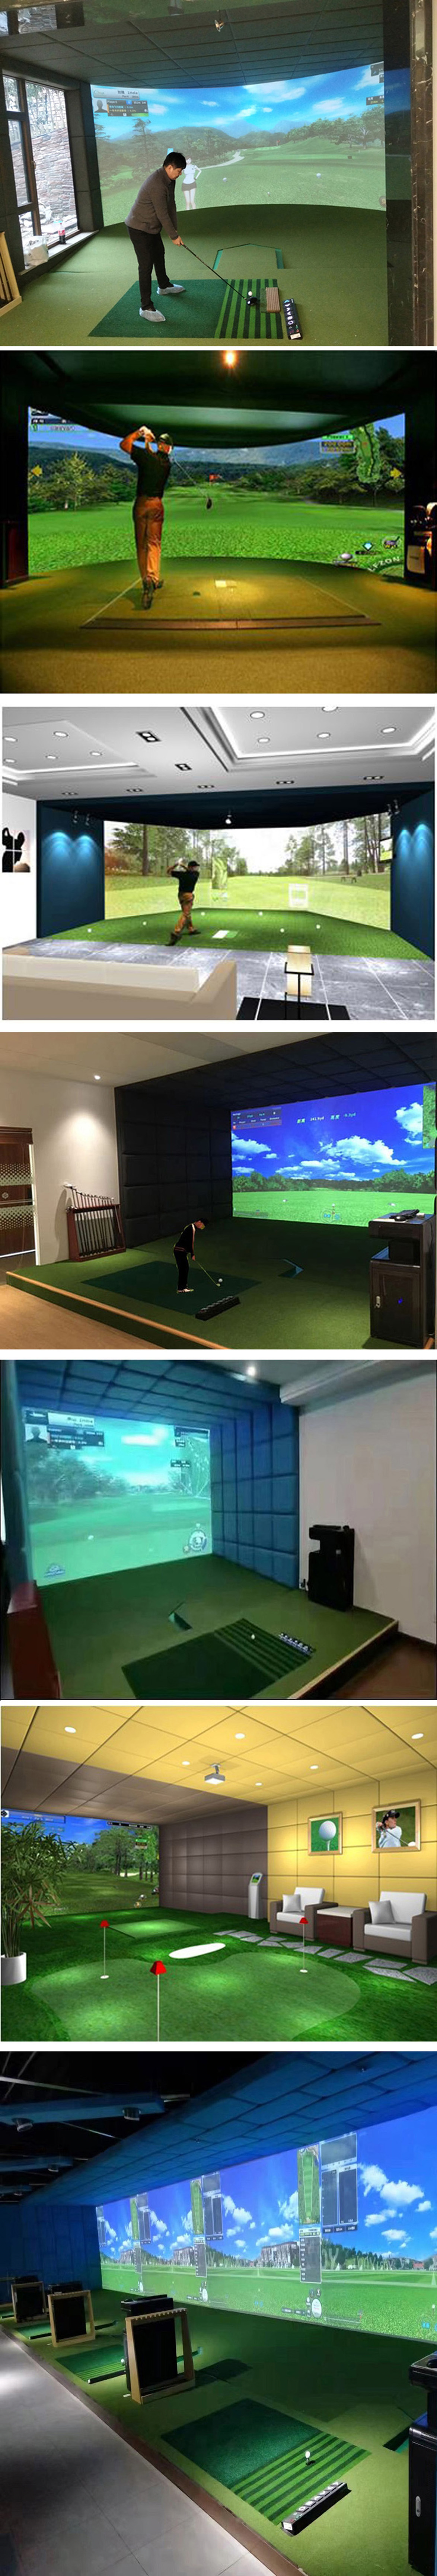 室内高尔夫模拟设备案例 四.jpg